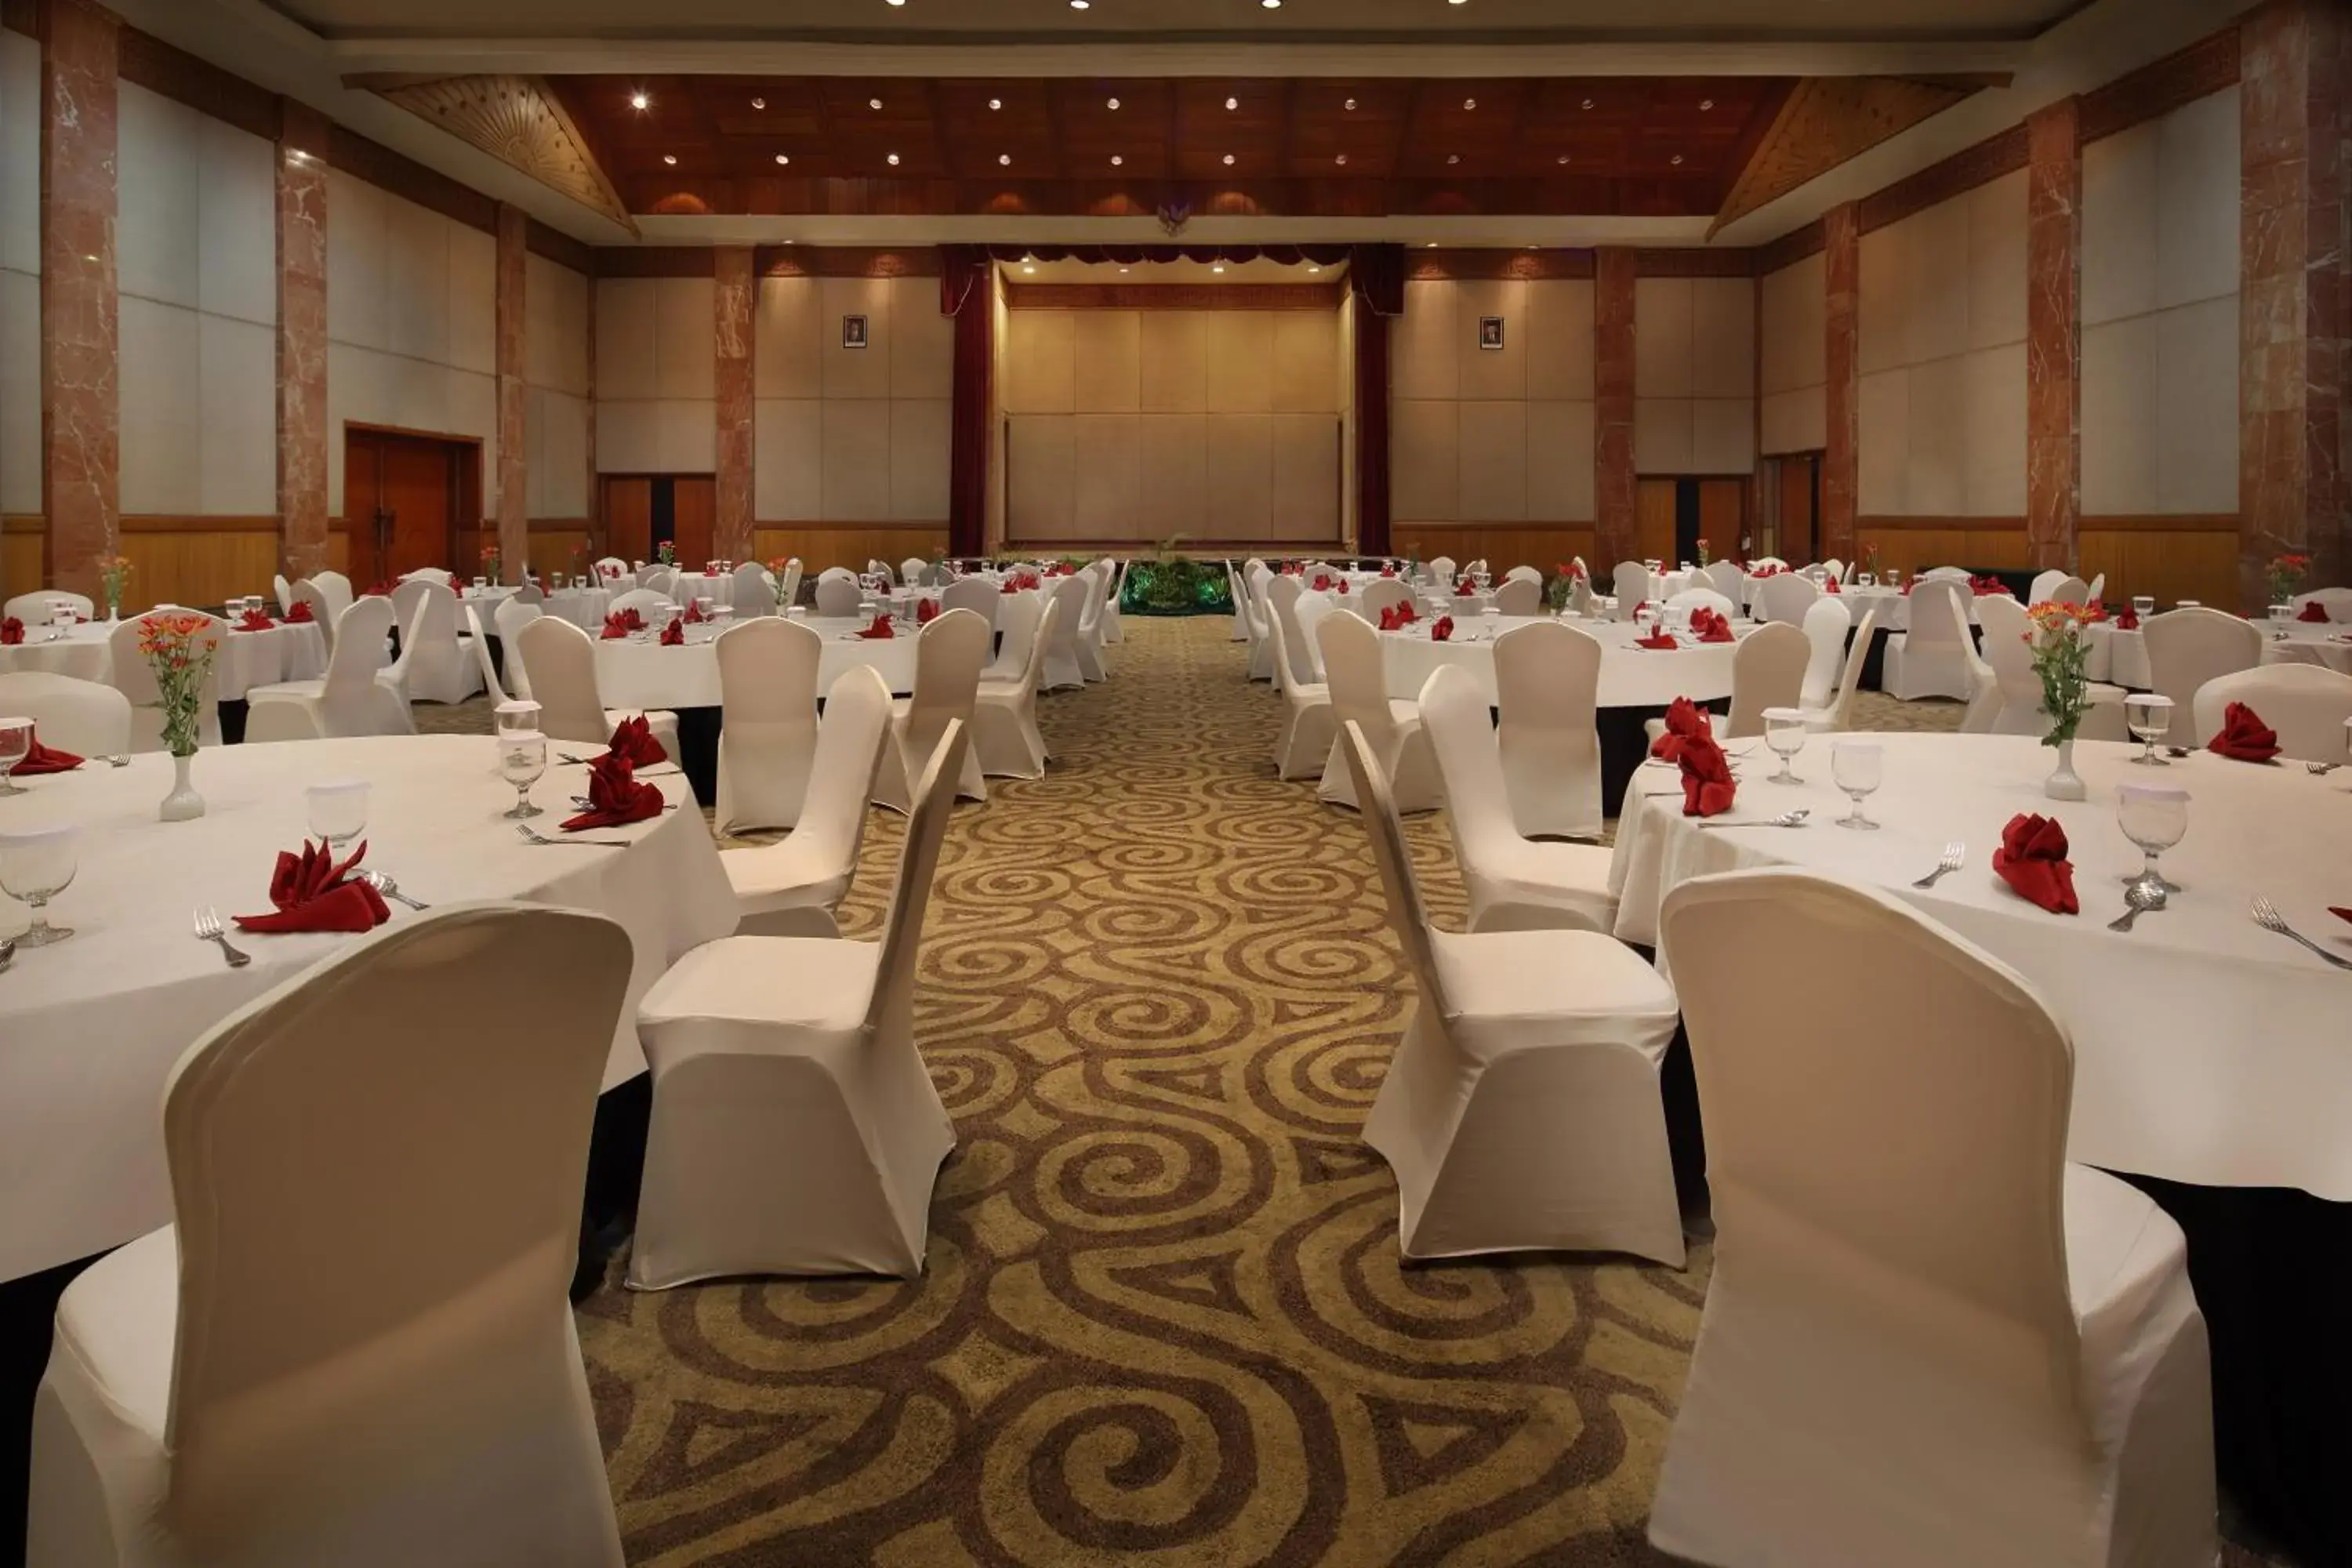 Banquet/Function facilities, Banquet Facilities in Hotel Aryaduta Pekanbaru